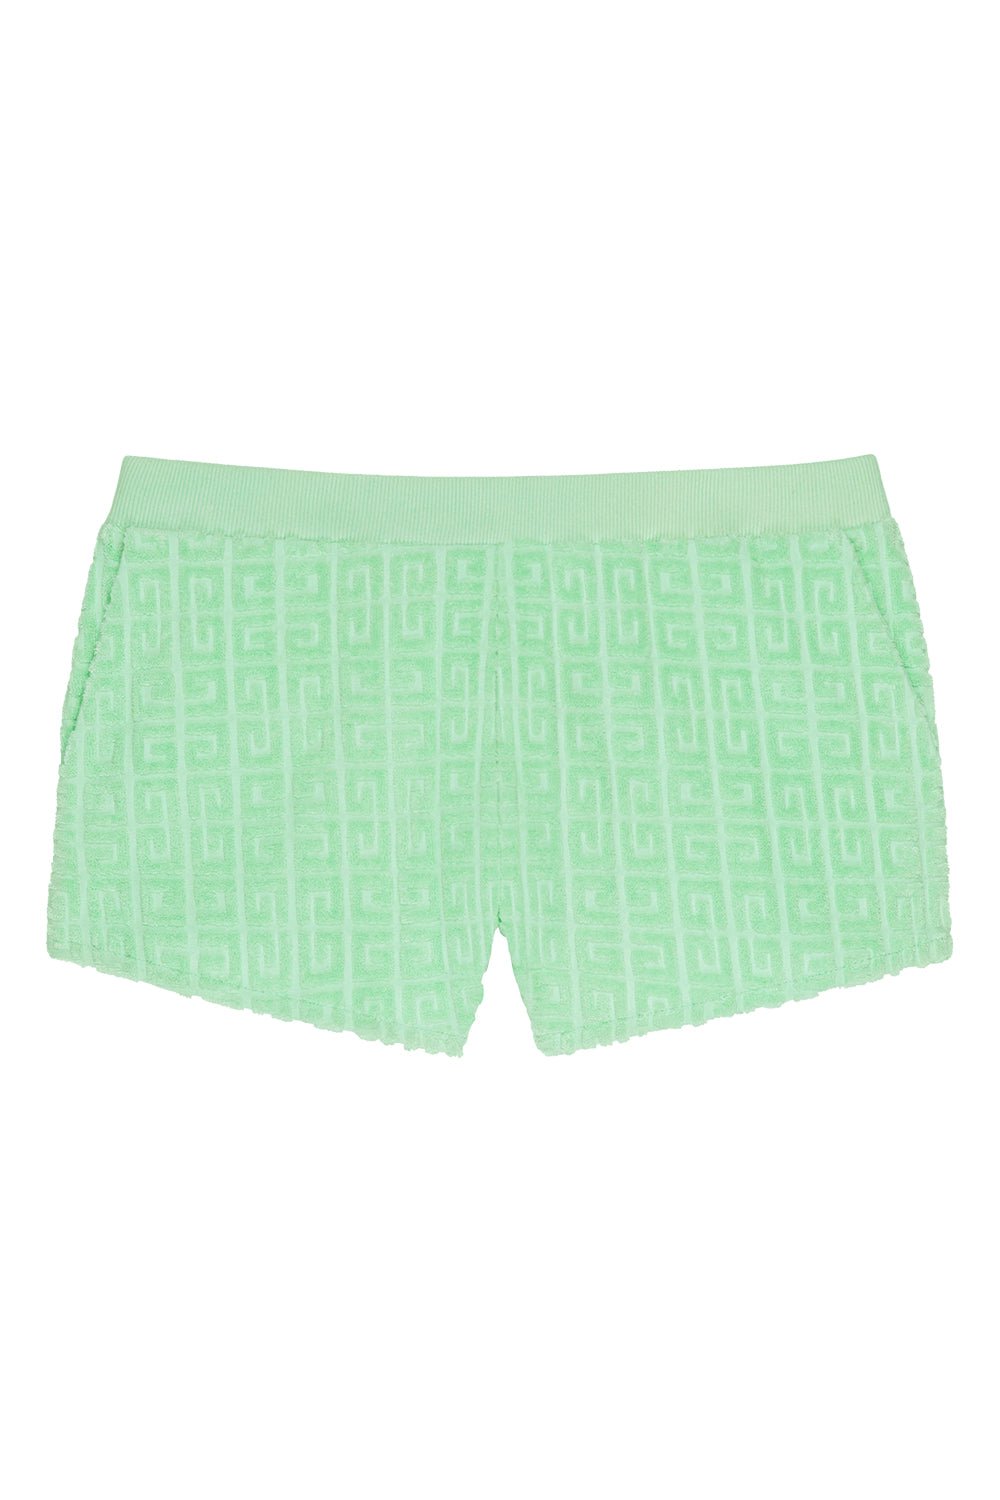 GIVENCHY-Toweling Shorts-AQUA GREEN